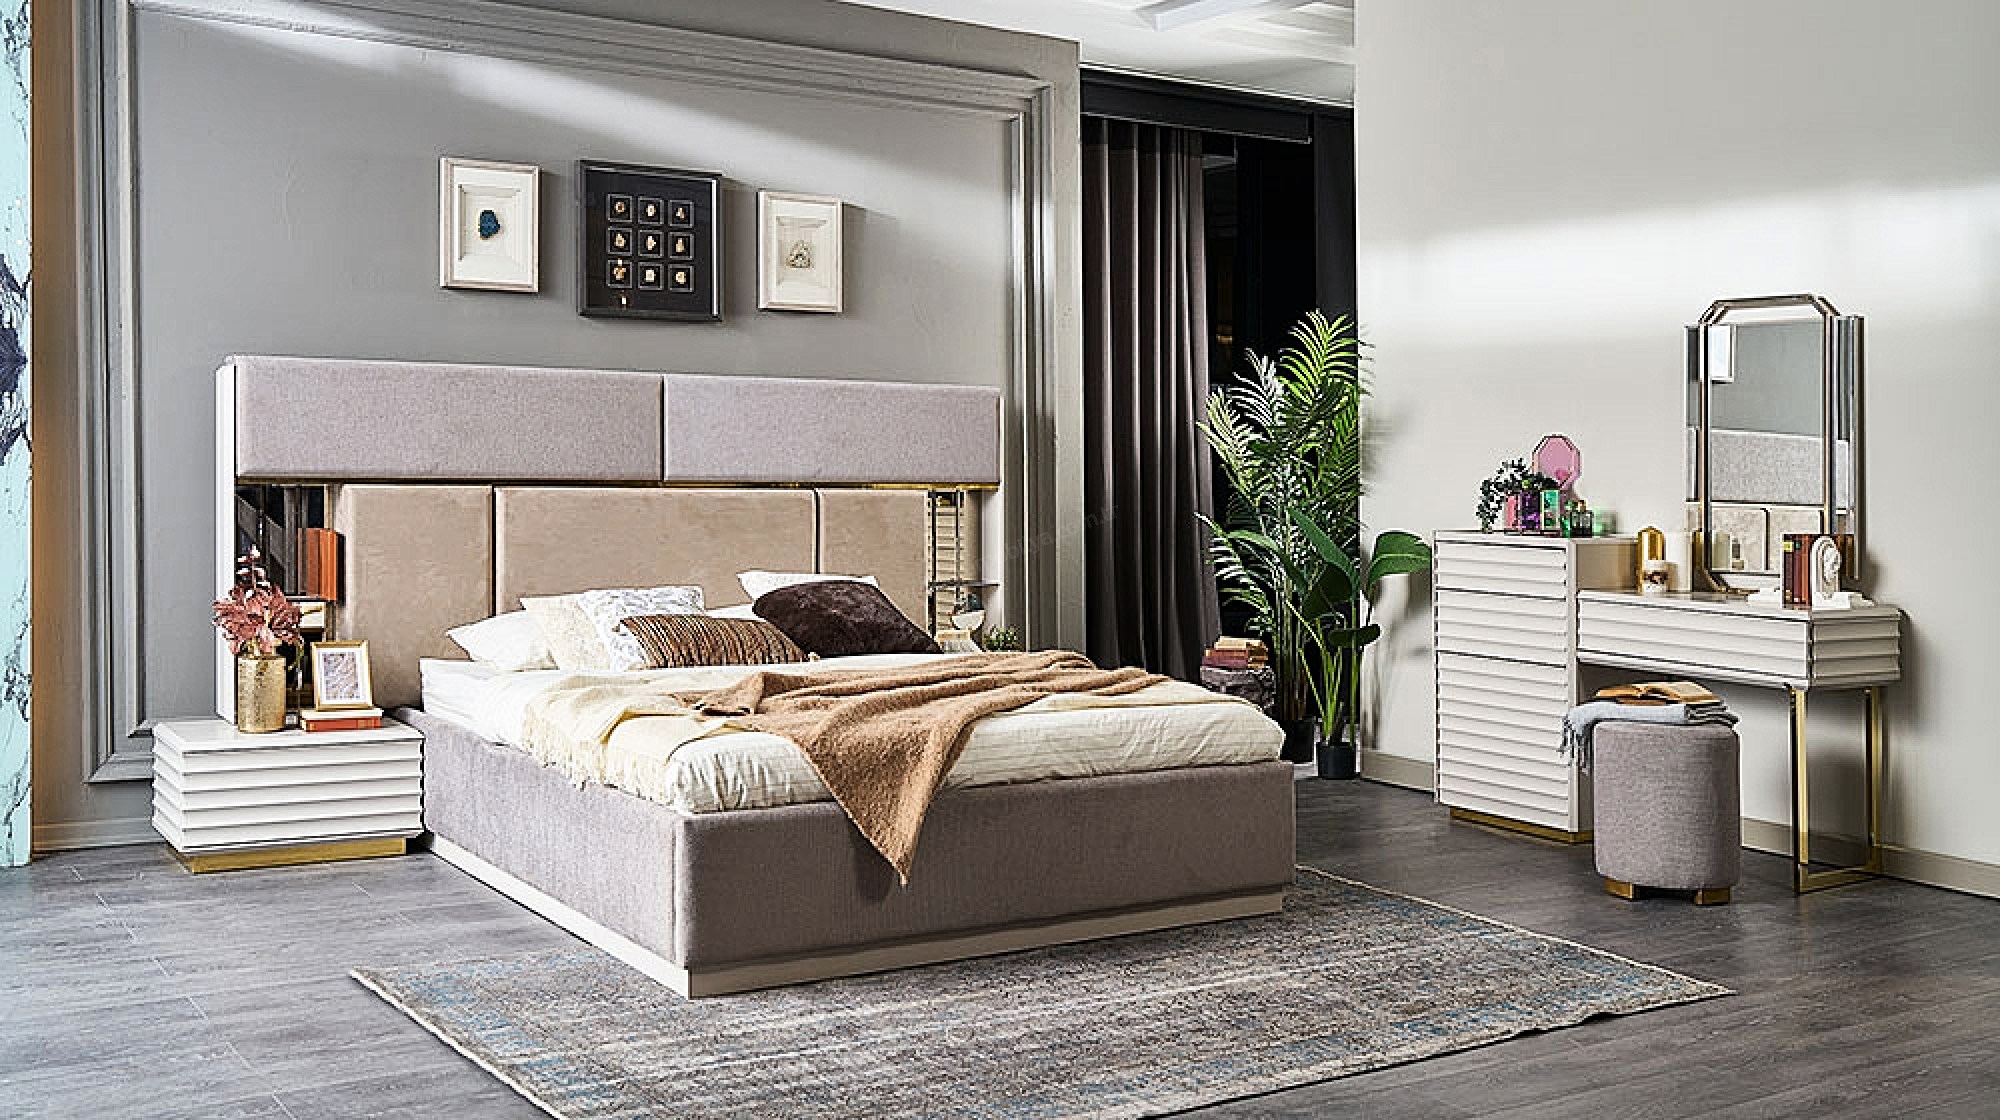 Verdona Modern Yatak Odası TakımıModern Yatak Odası